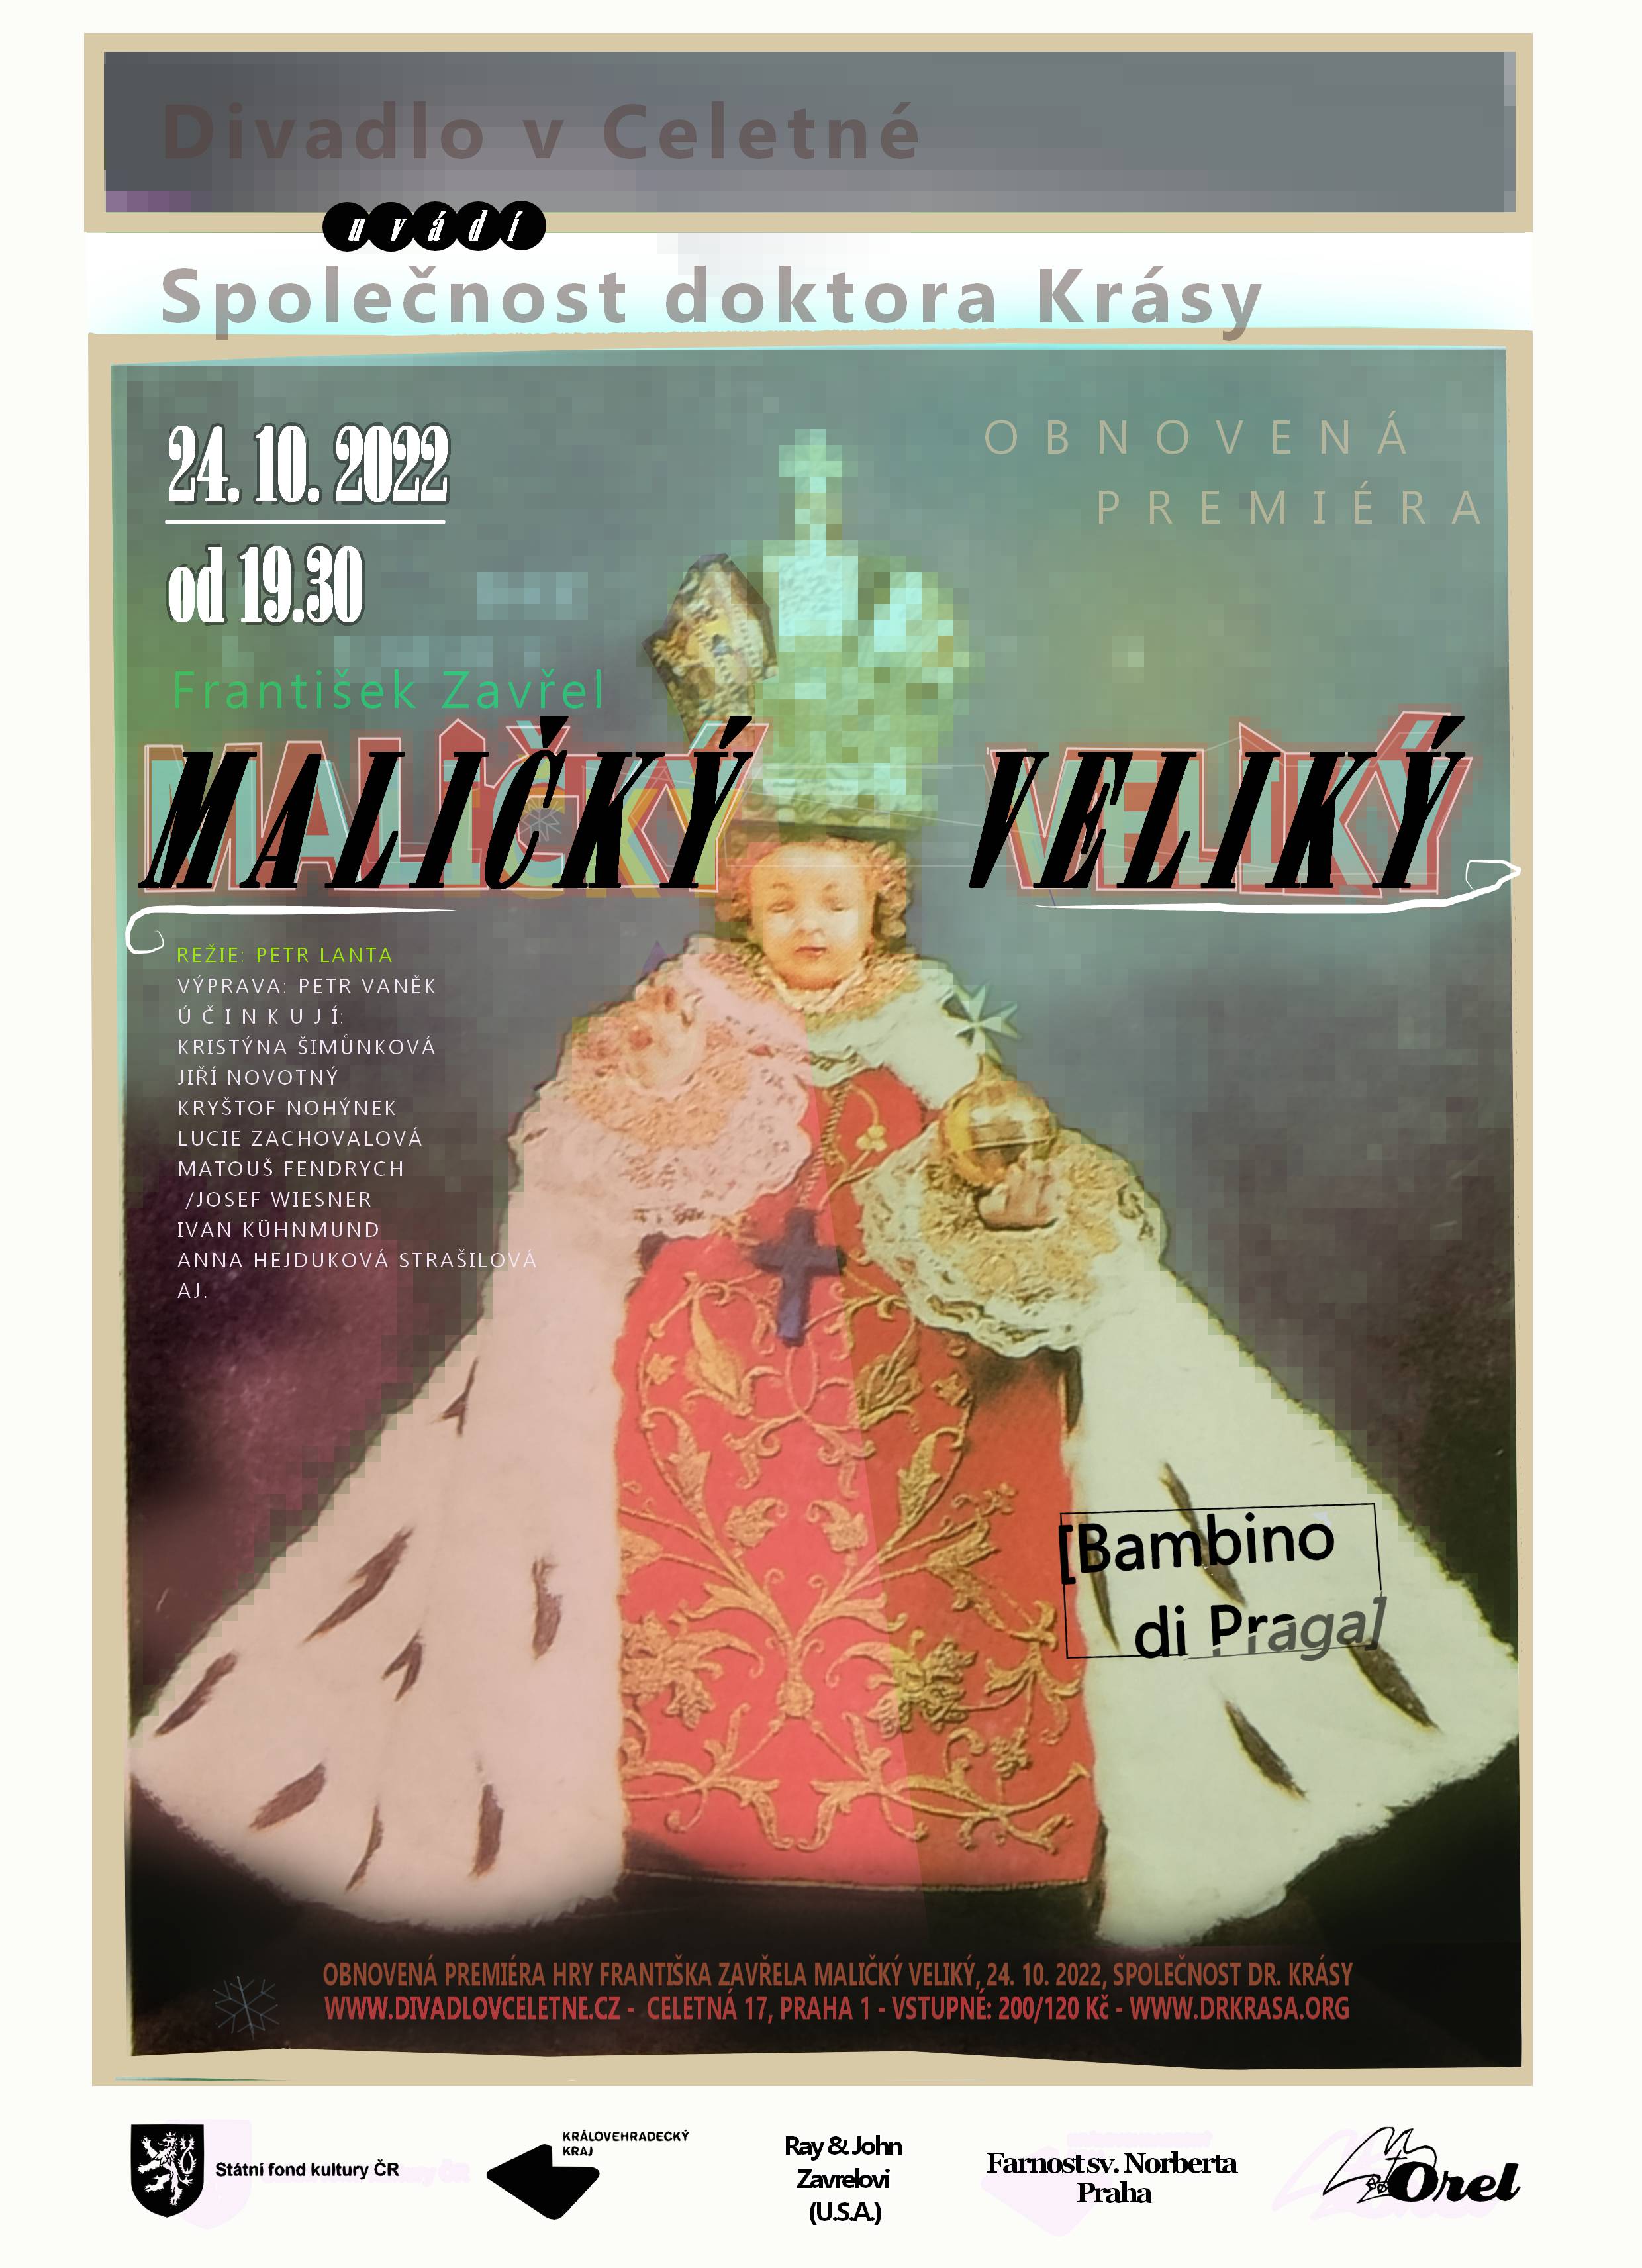 Plakát na premiéru Maličký veliký (Bambino di Praga) 24. 10. 2022 v Divadle v Celetné